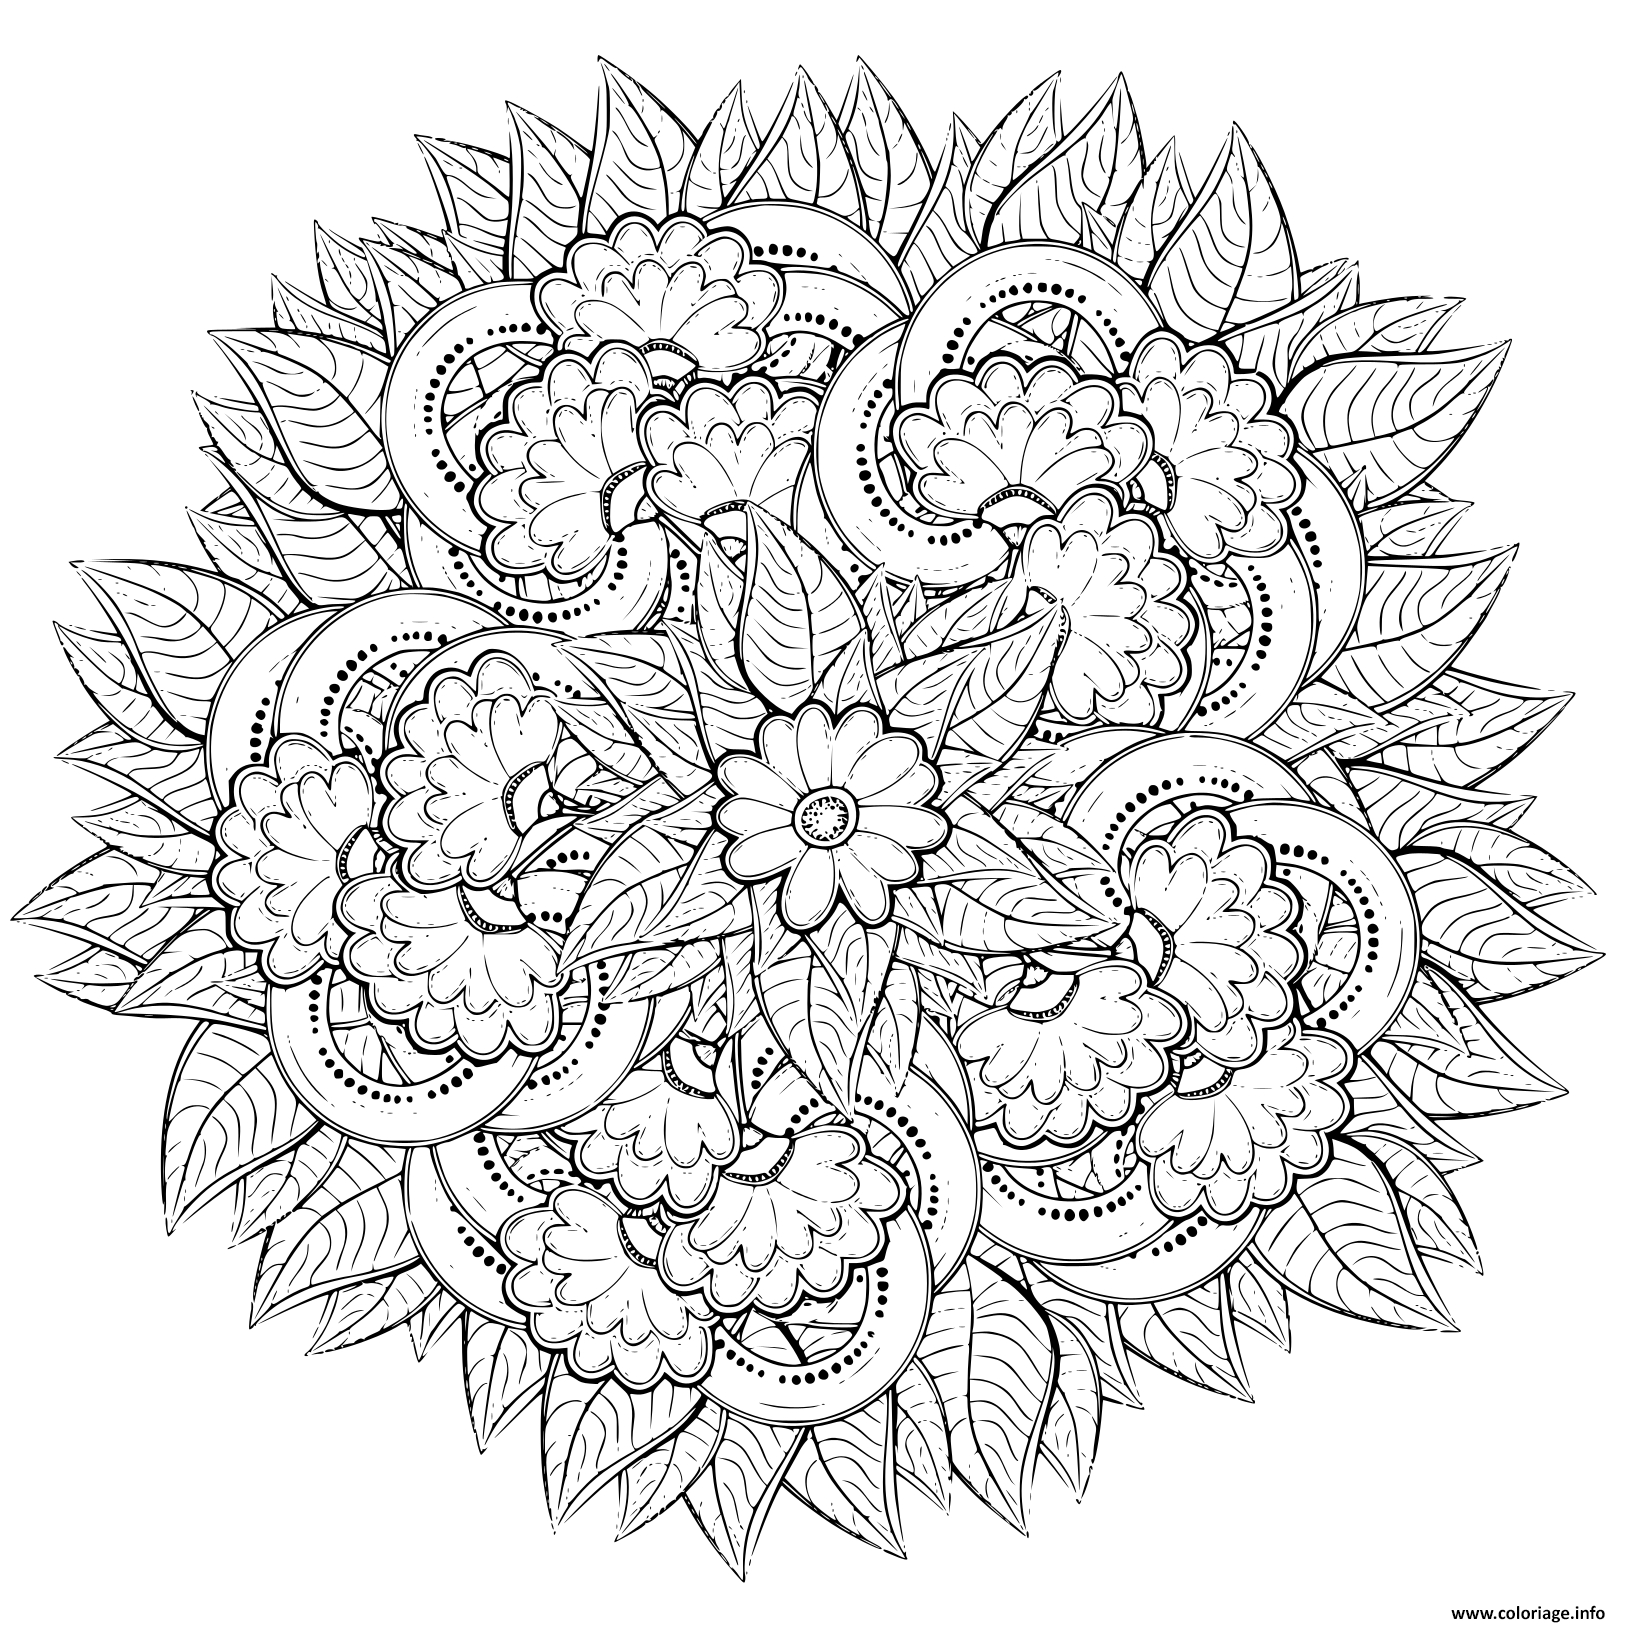 Coloriage Mandala Fleurs Pour Adulte Nature Dessin Fleurs À Imprimer avec Dessin De Fleurs A Imprimer Gratuit